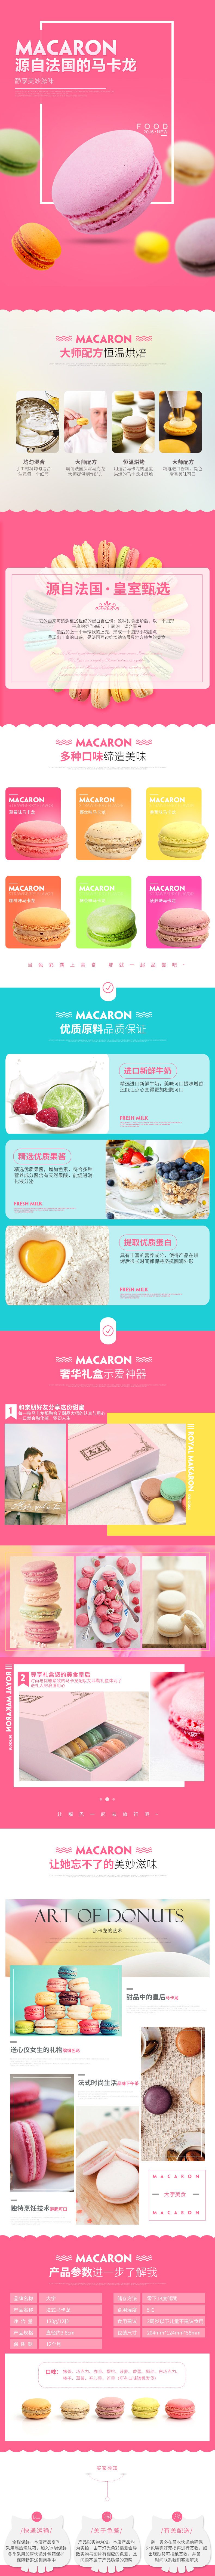 淘宝美工小盈子法式马卡龙12枚甜点甜品西式糕点零食点心生日礼盒装作品